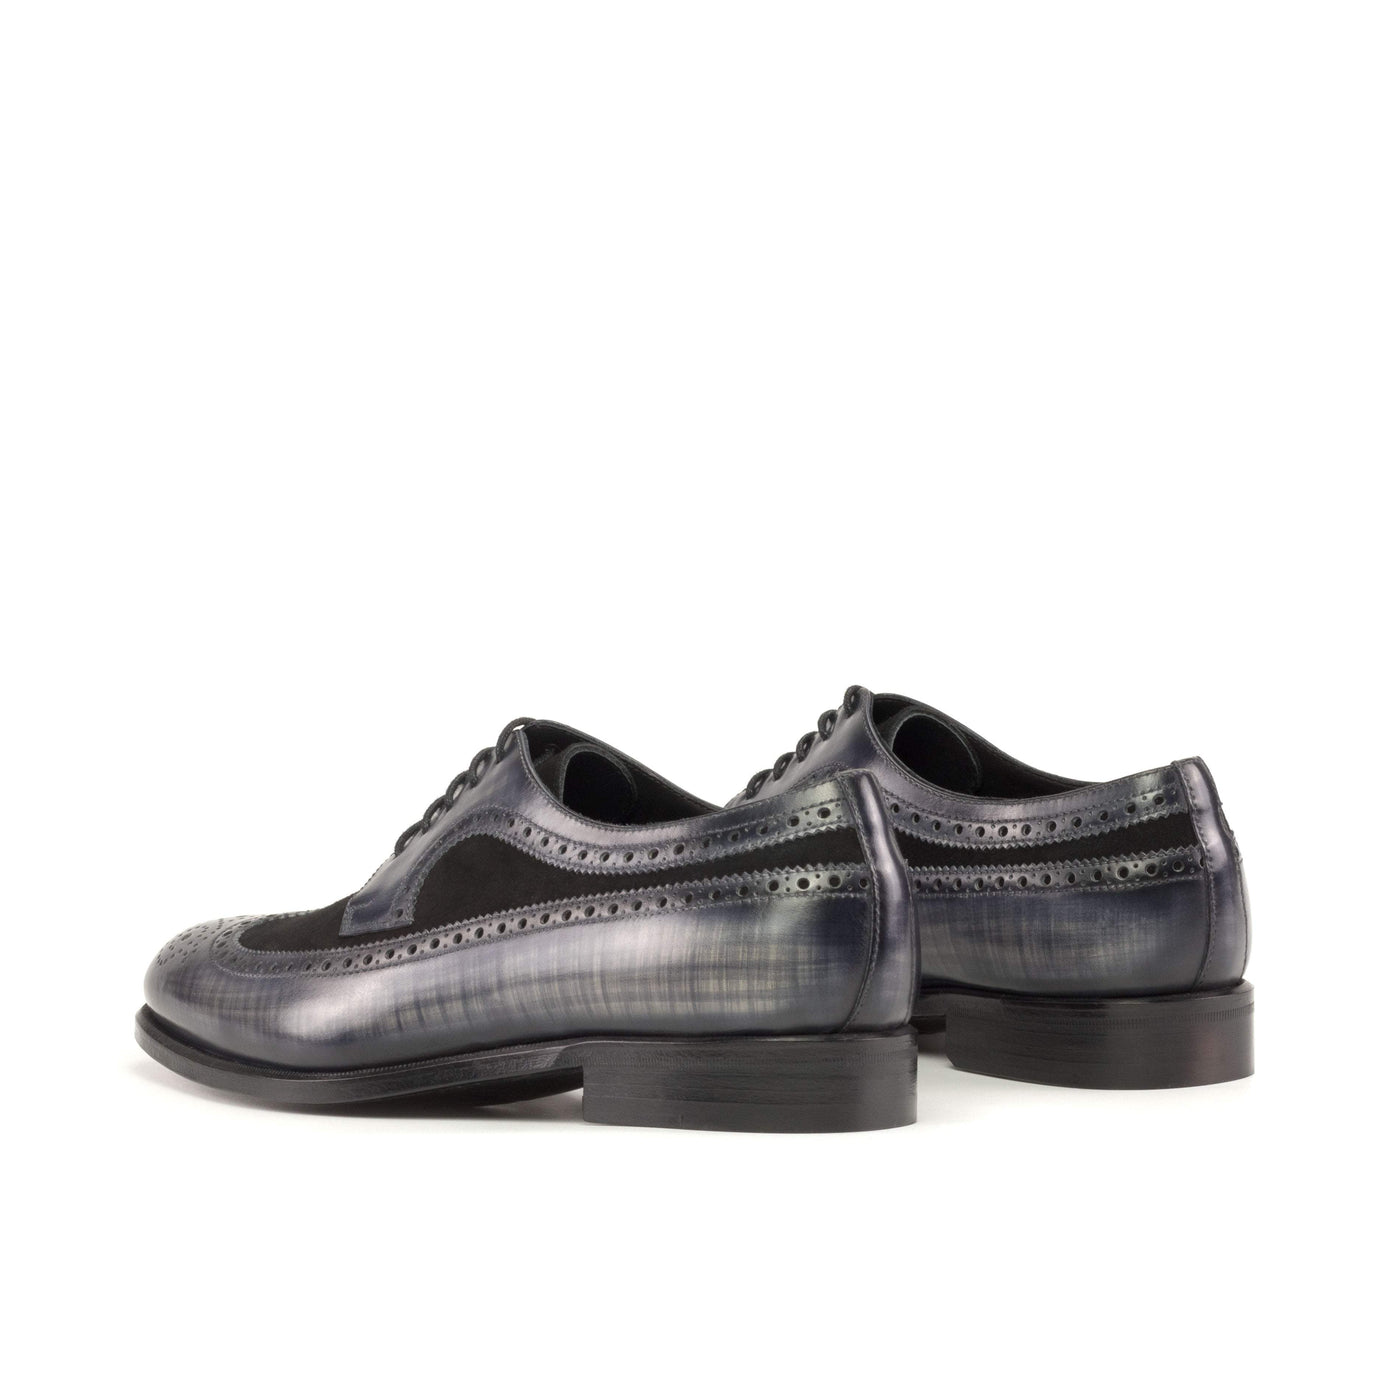 Men's Longwing Blucher Shoes Patina Leather Black Grey 5361 2- MERRIMIUM